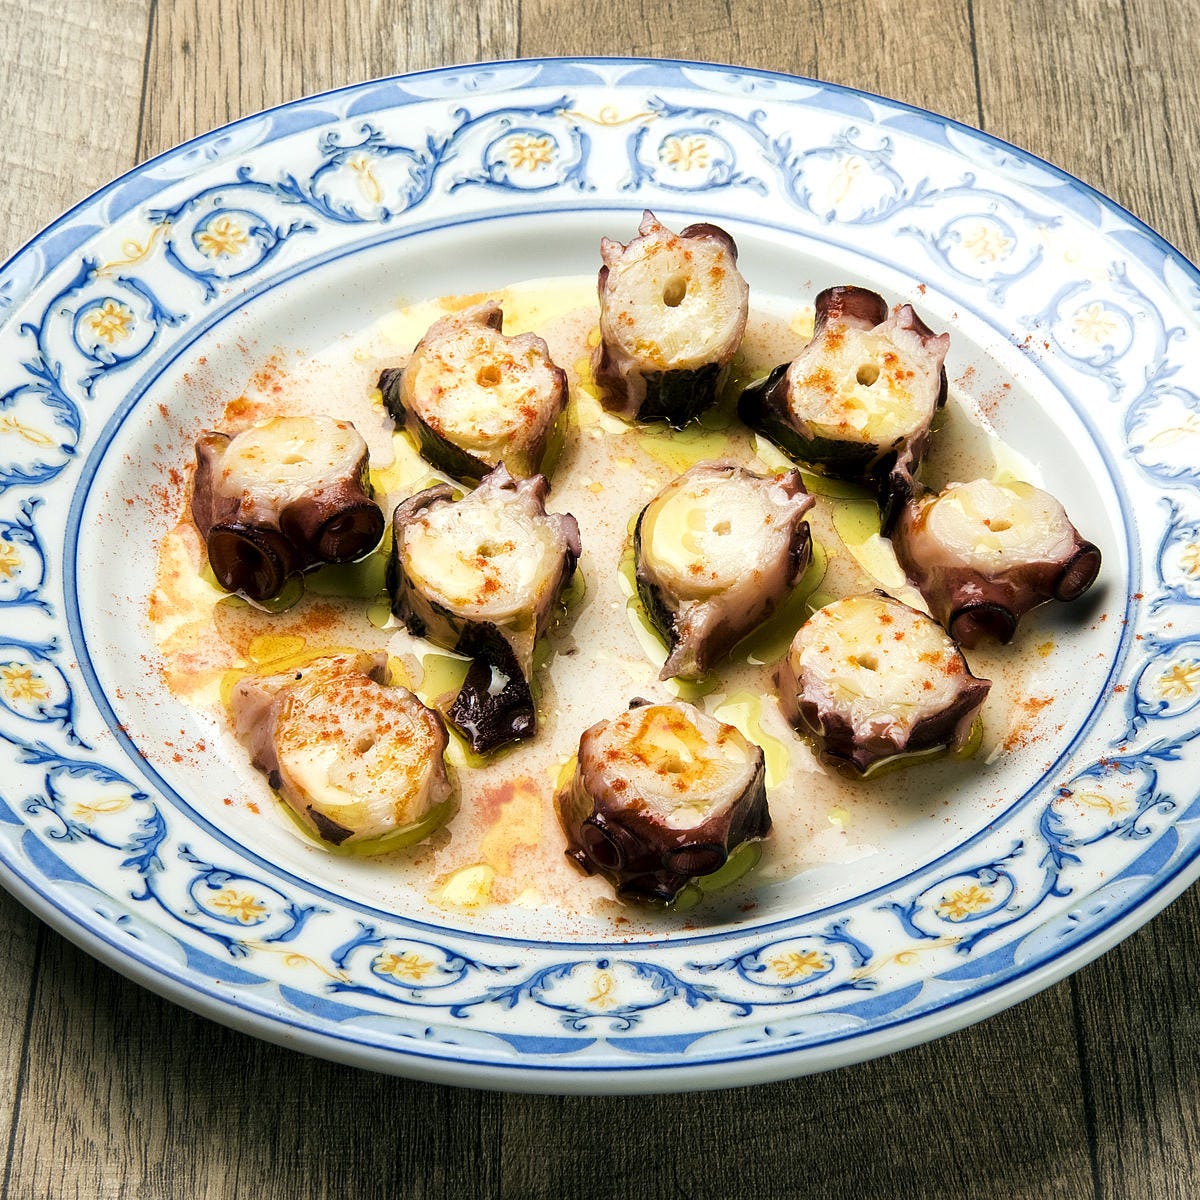 スペイン風の皿に盛りつけられたタコの前菜